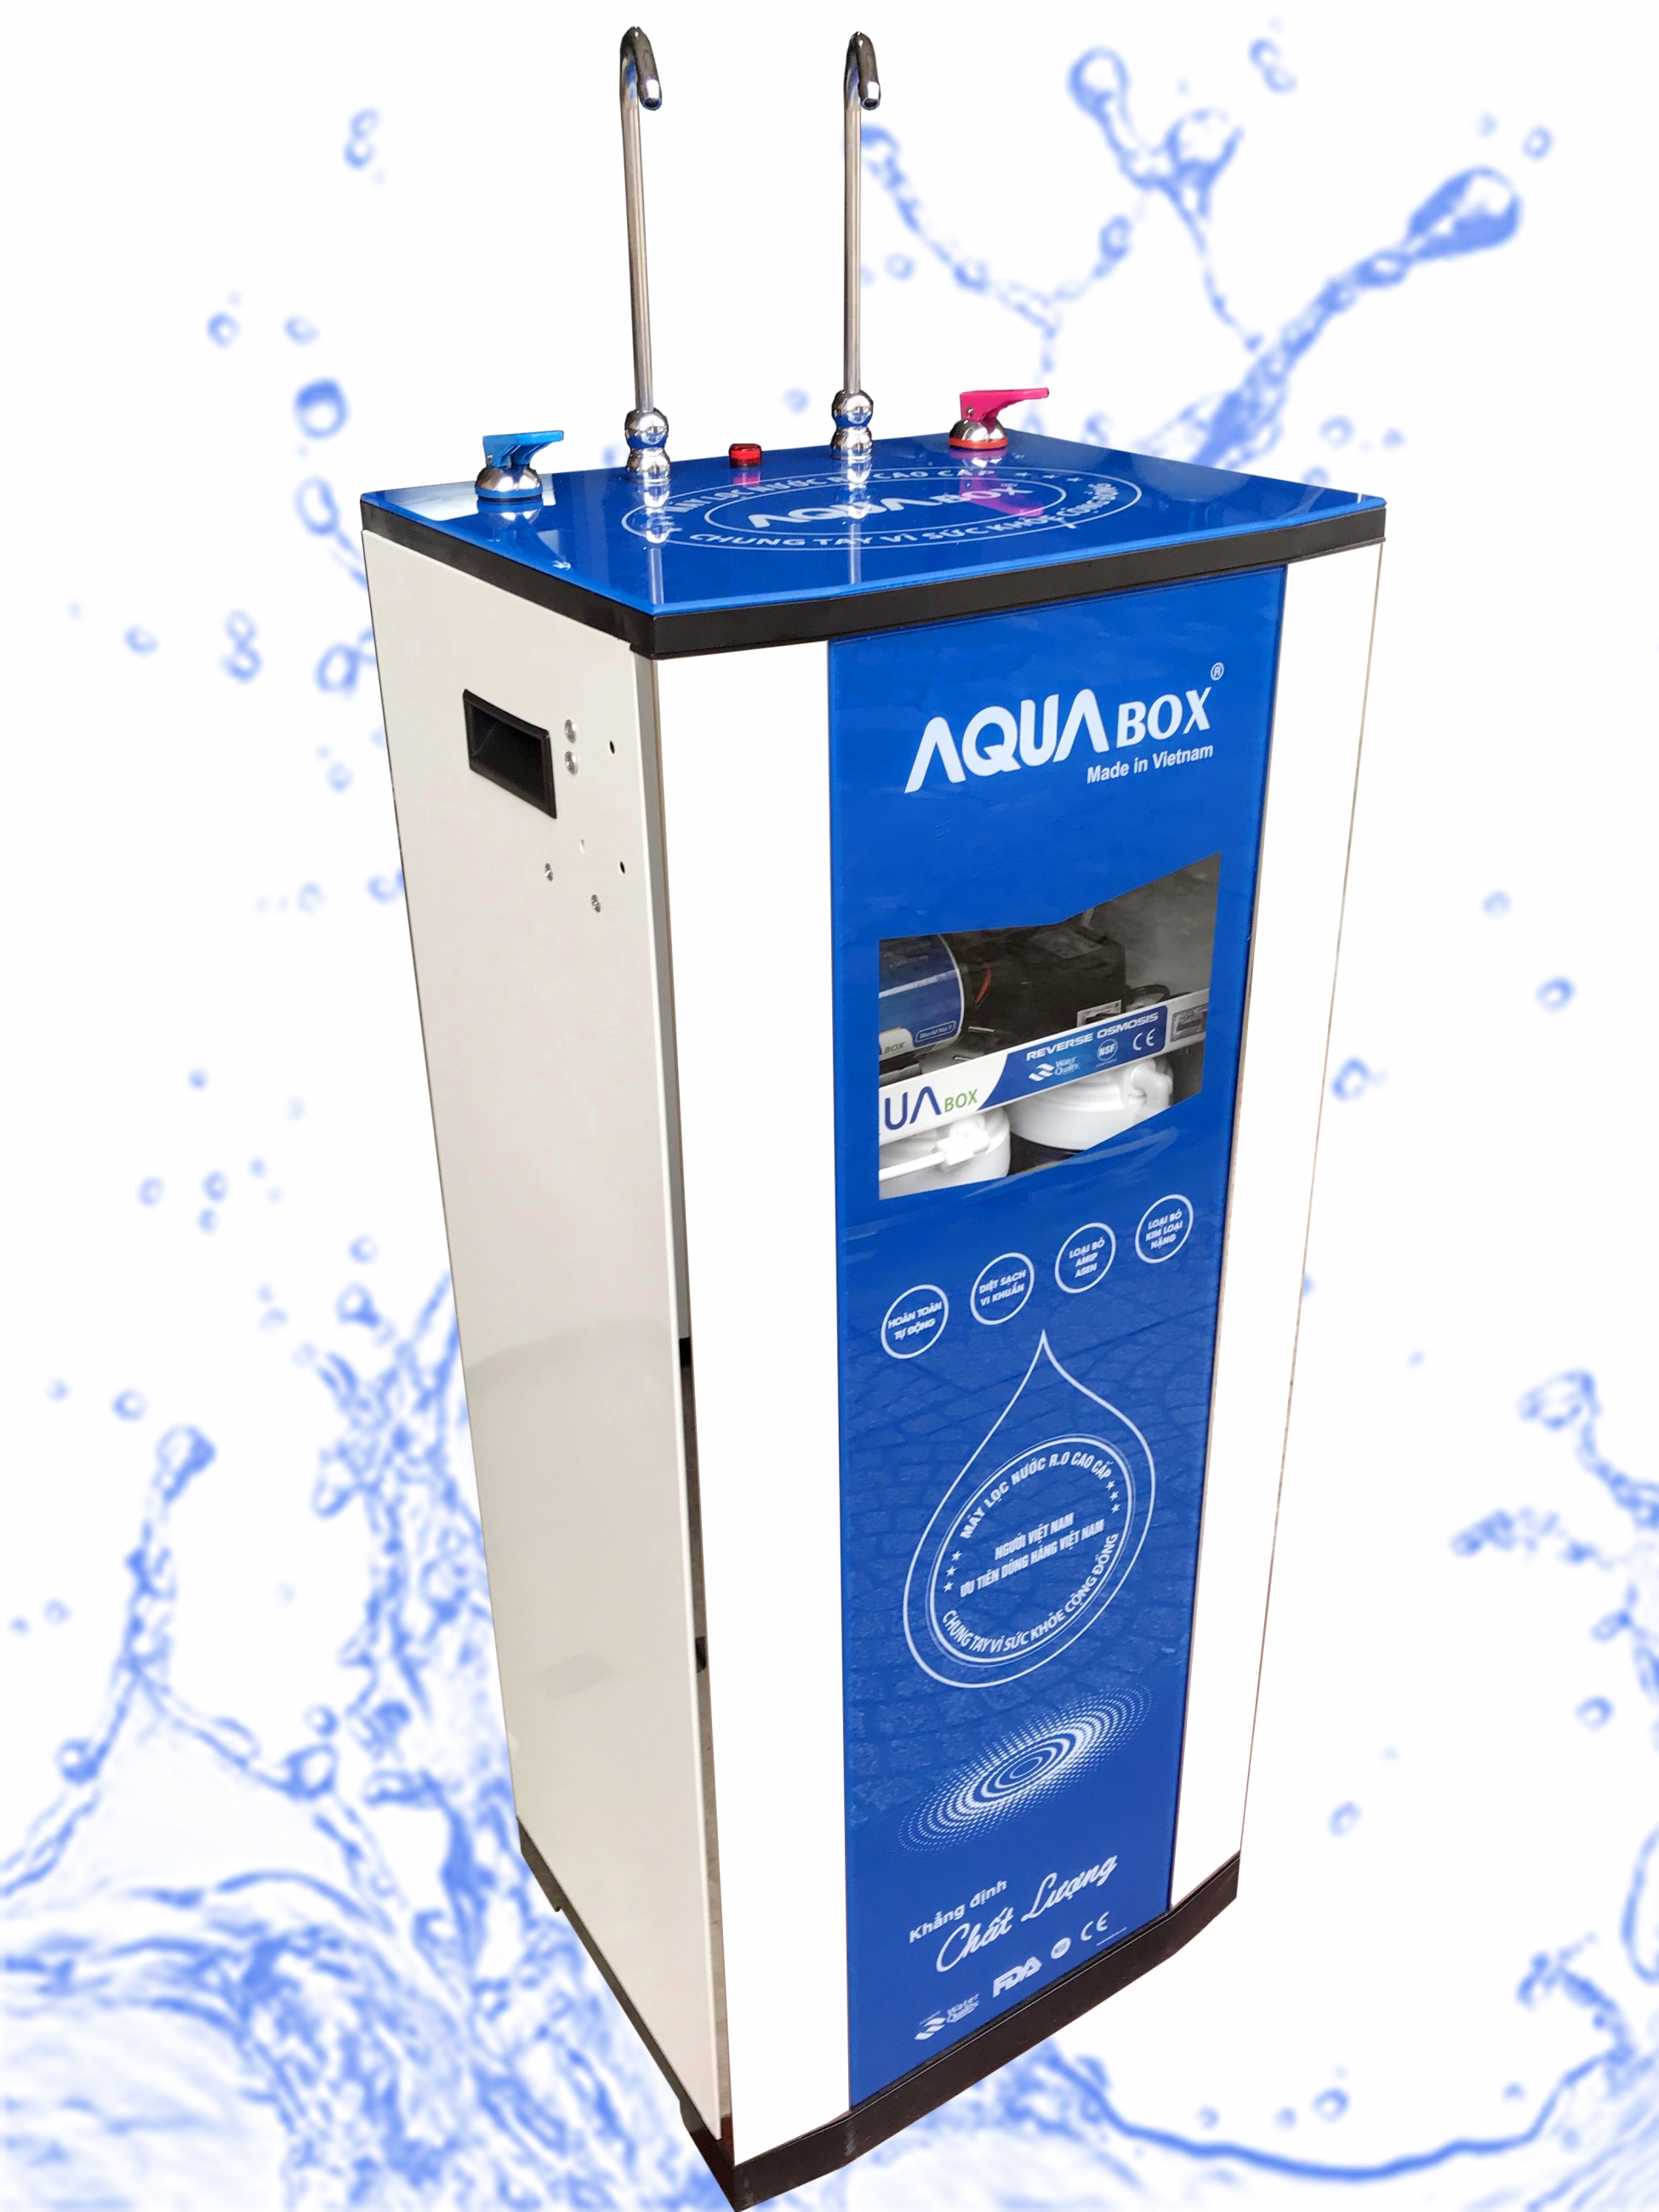 máy lọc nước aqua tại vinh nghệ an